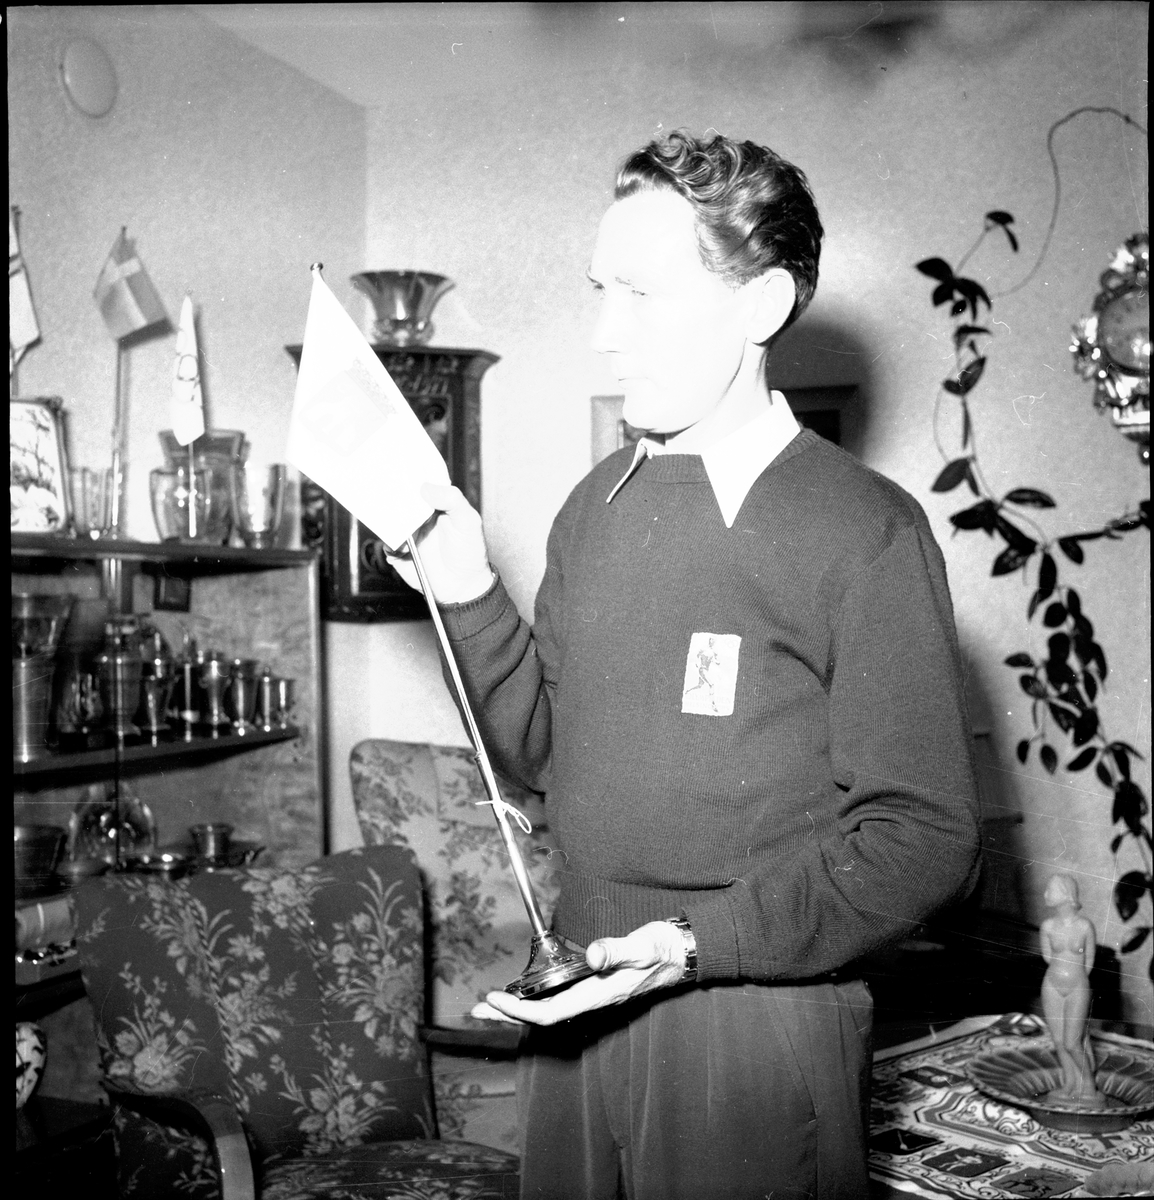 Valter Nyström visar medaljerna. 14 november 1952.

